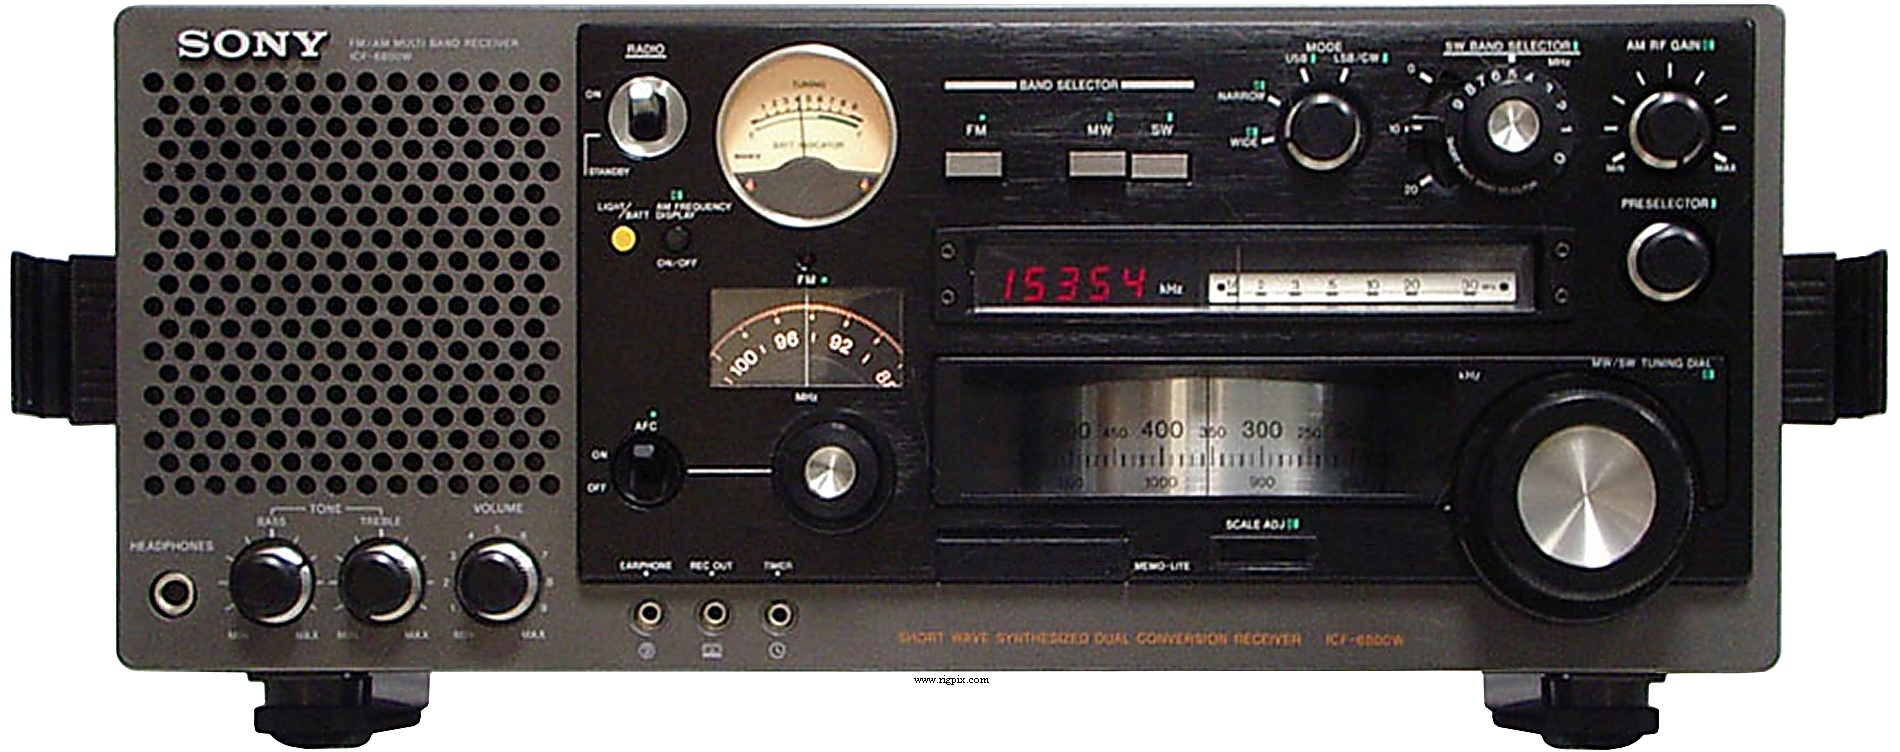 ソニーICF-6800 - ラジオ